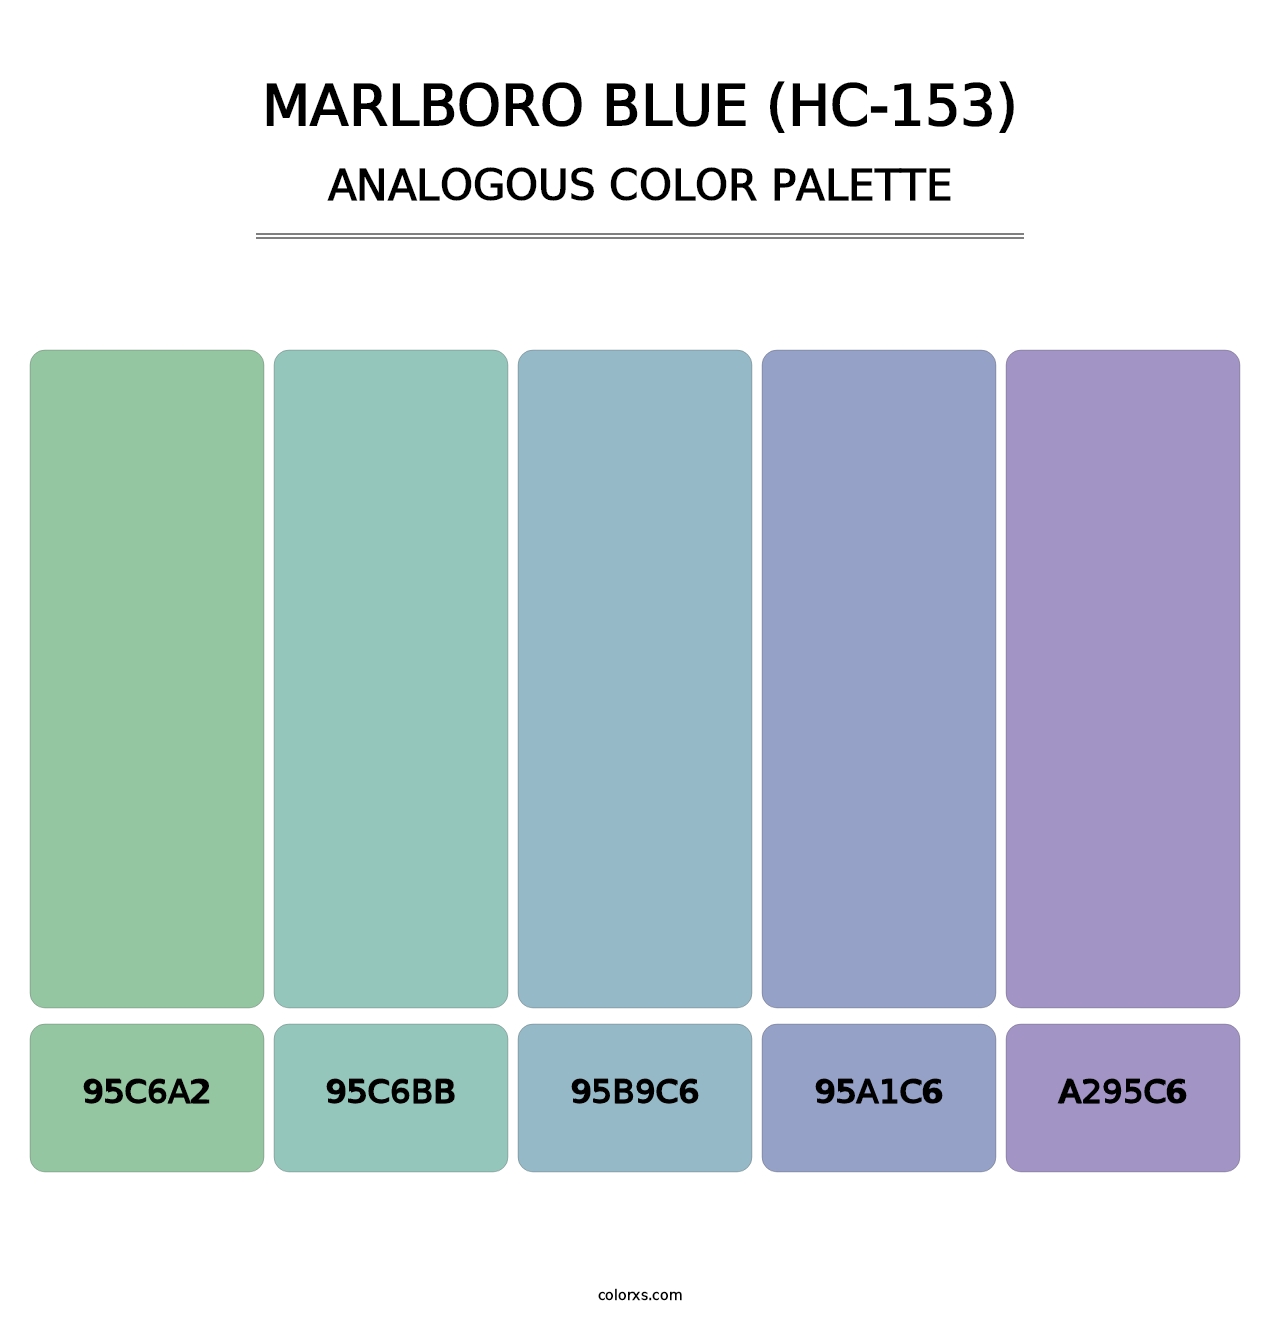 Marlboro Blue (HC-153) - Analogous Color Palette